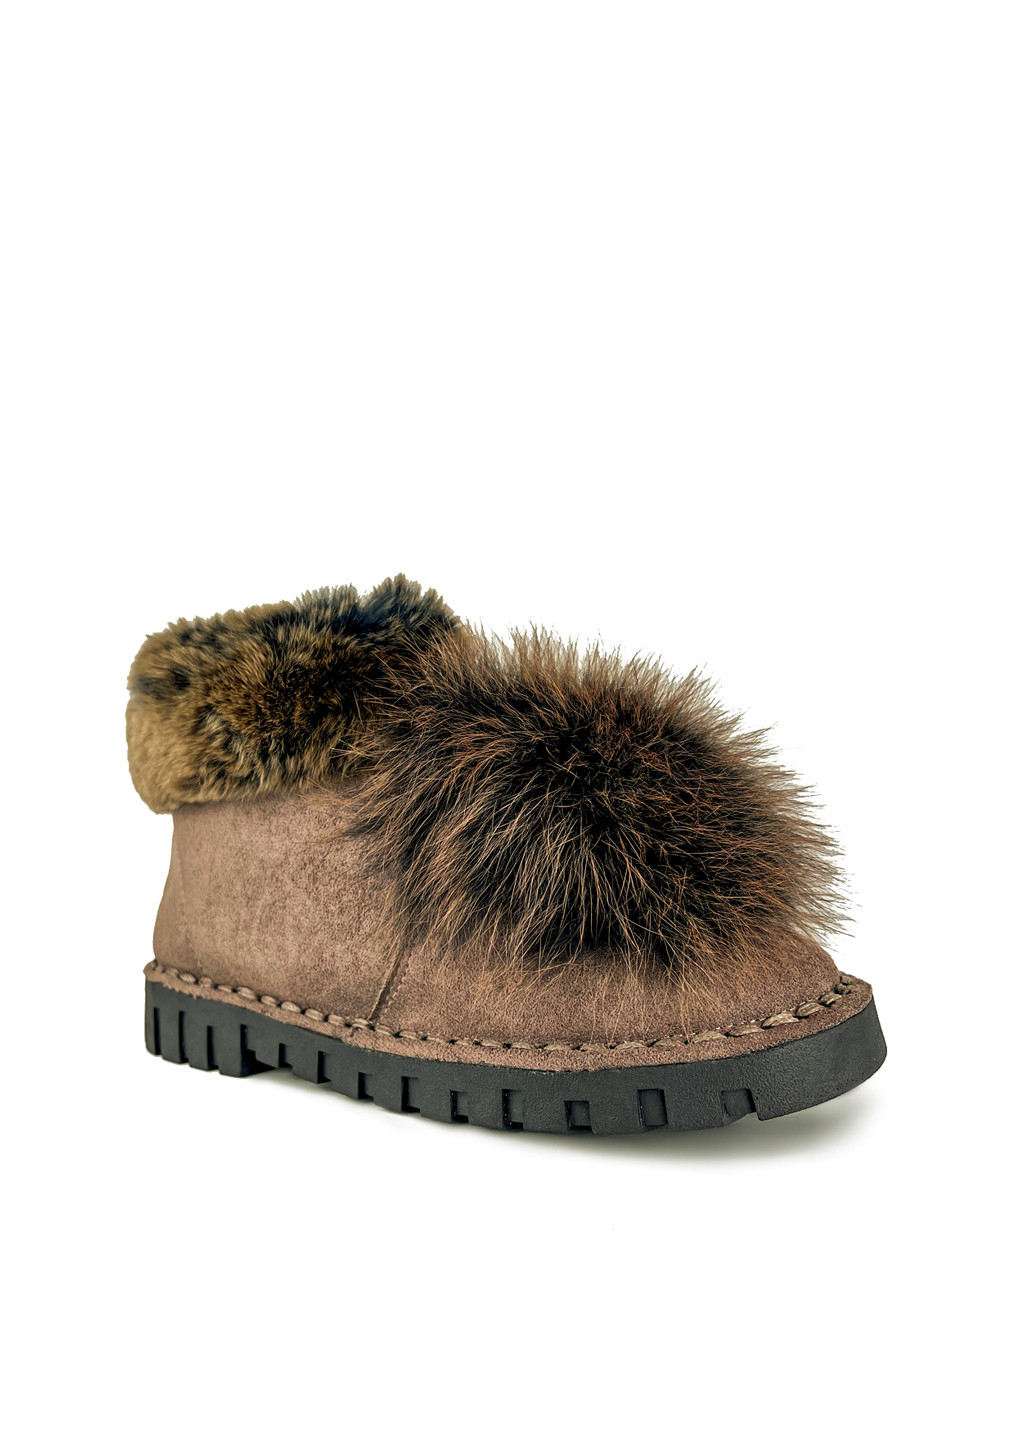 Черевики коричневі жіночі еко замша коричневі зимові Fashion (251198616)